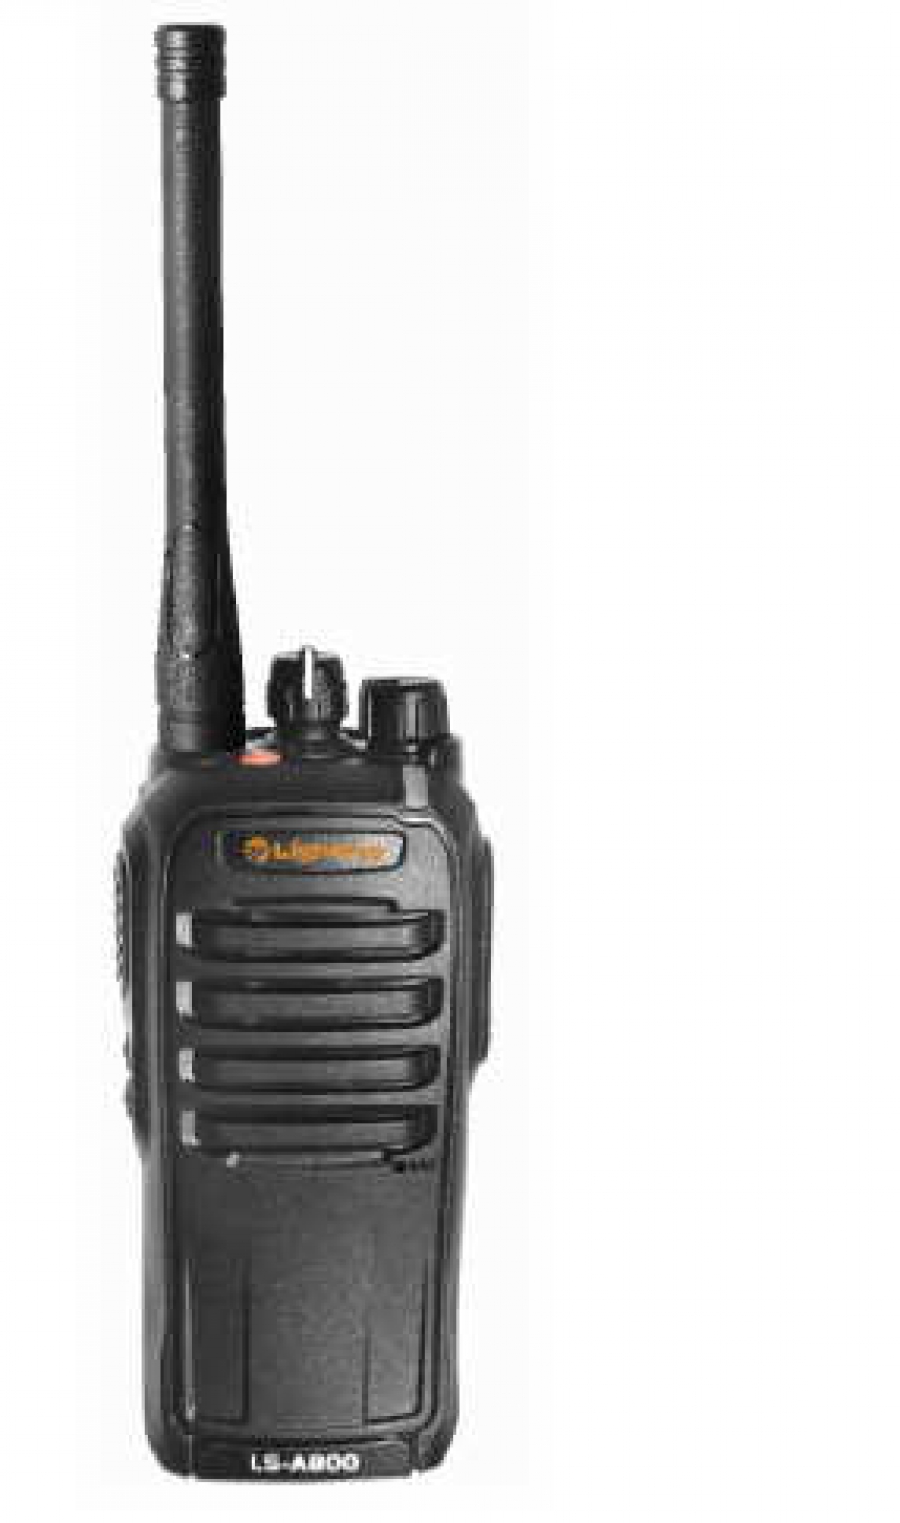 DMR радиостанции и технология РоС связи